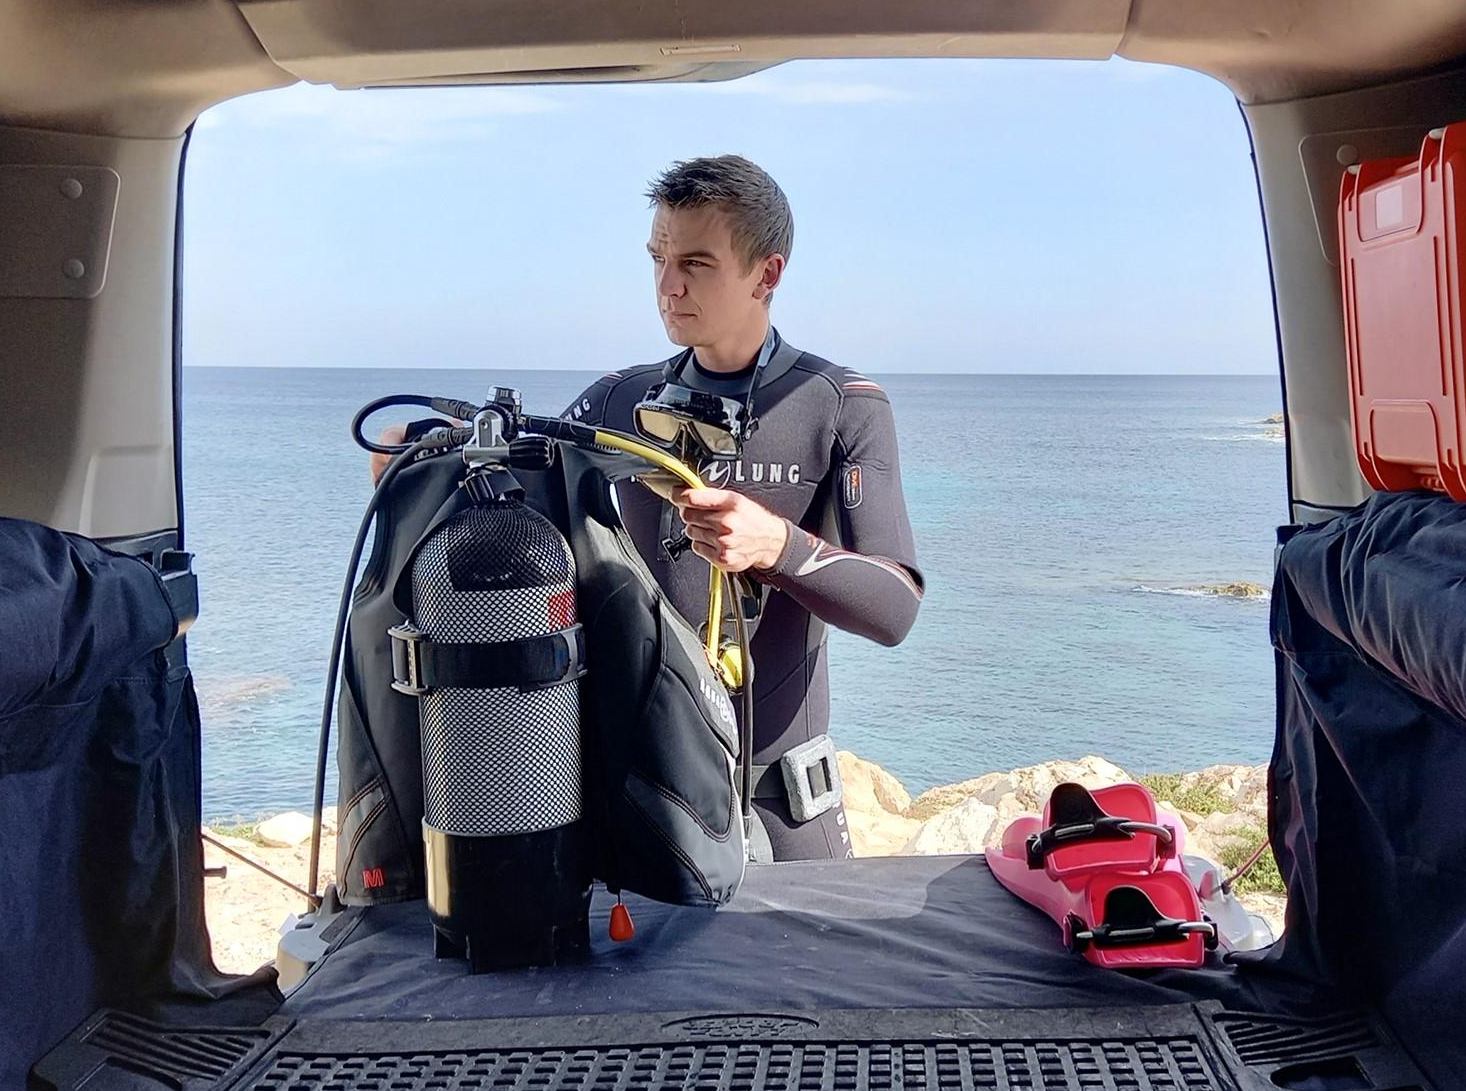 British dive-pro came to the rescue in Malta